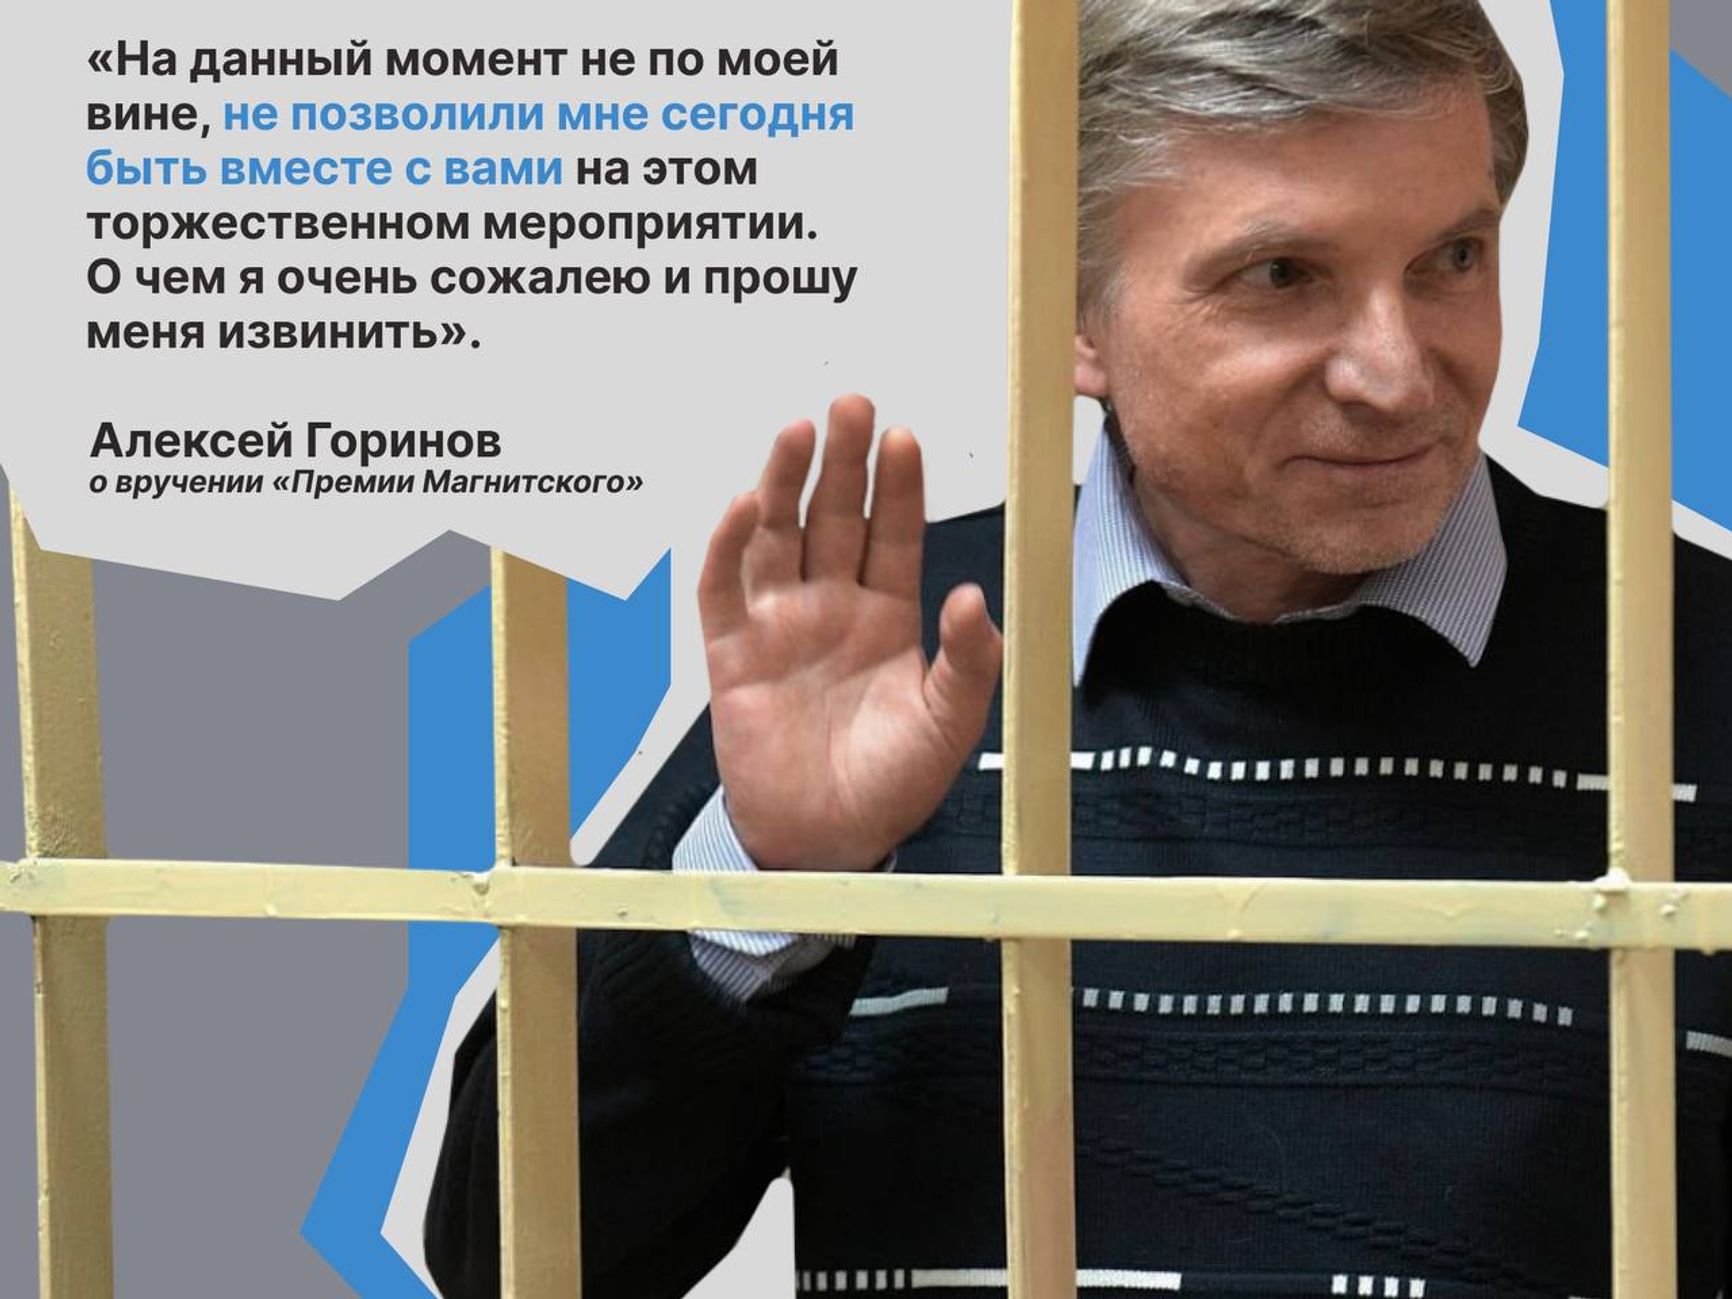 Осужденному за «фейки» про армию Алексею Горинову вручили «Премию Магнитского»